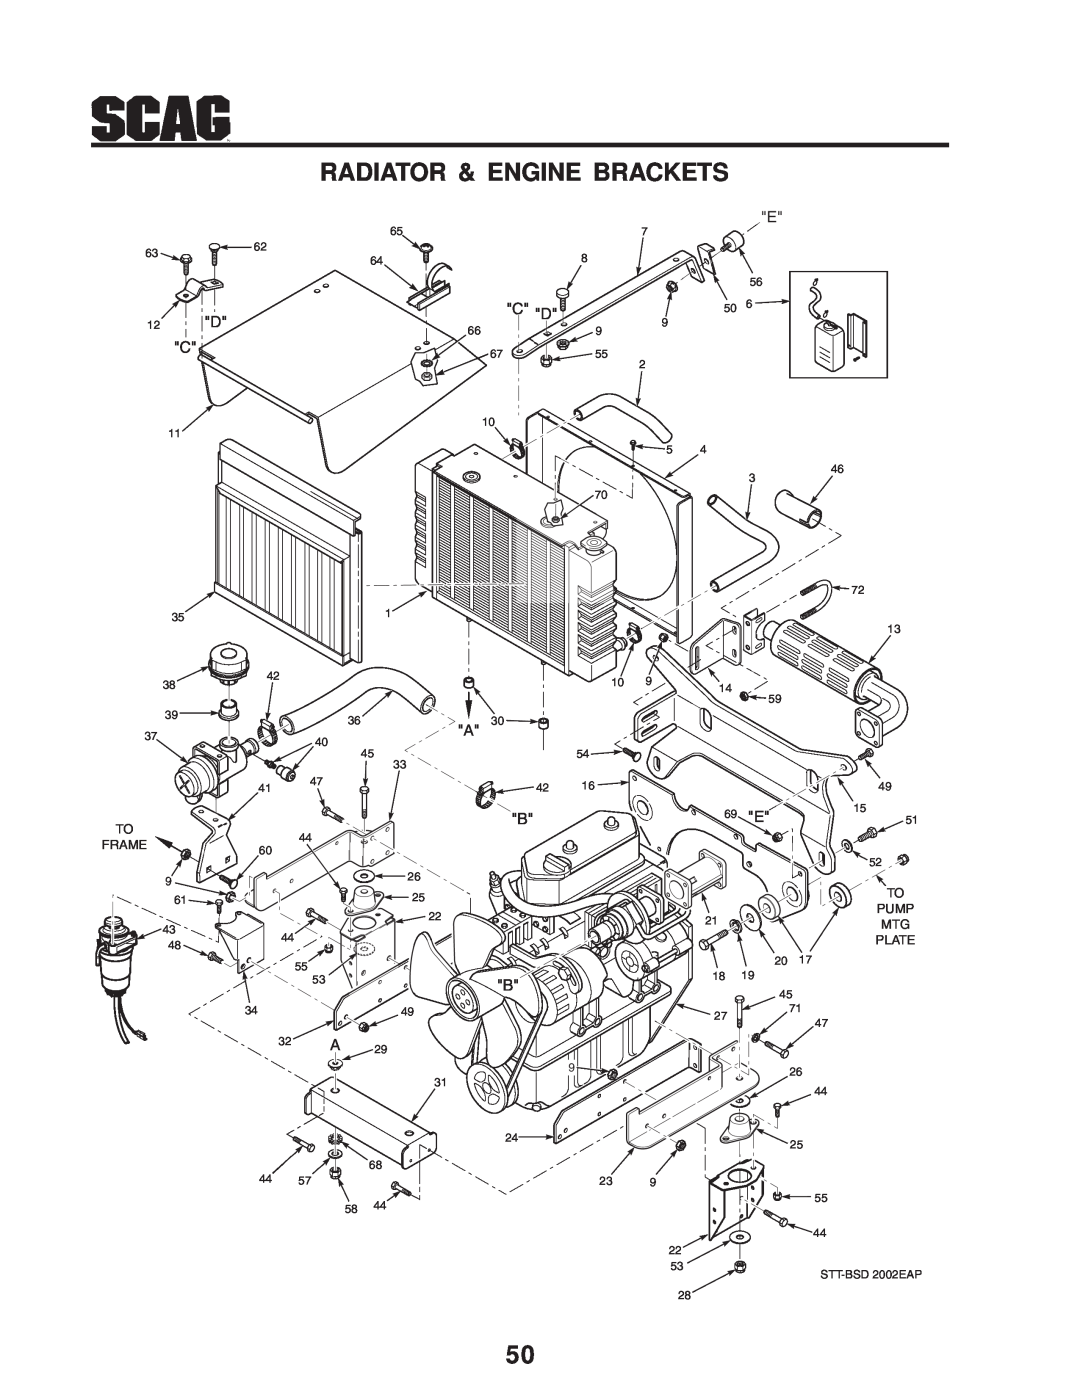 Scag Power Equipment STT-31BSD manual Radiator & Engine Brackets, 12 D C, C D, Frame, 69 E, Pump, Plate, 20 17 18 